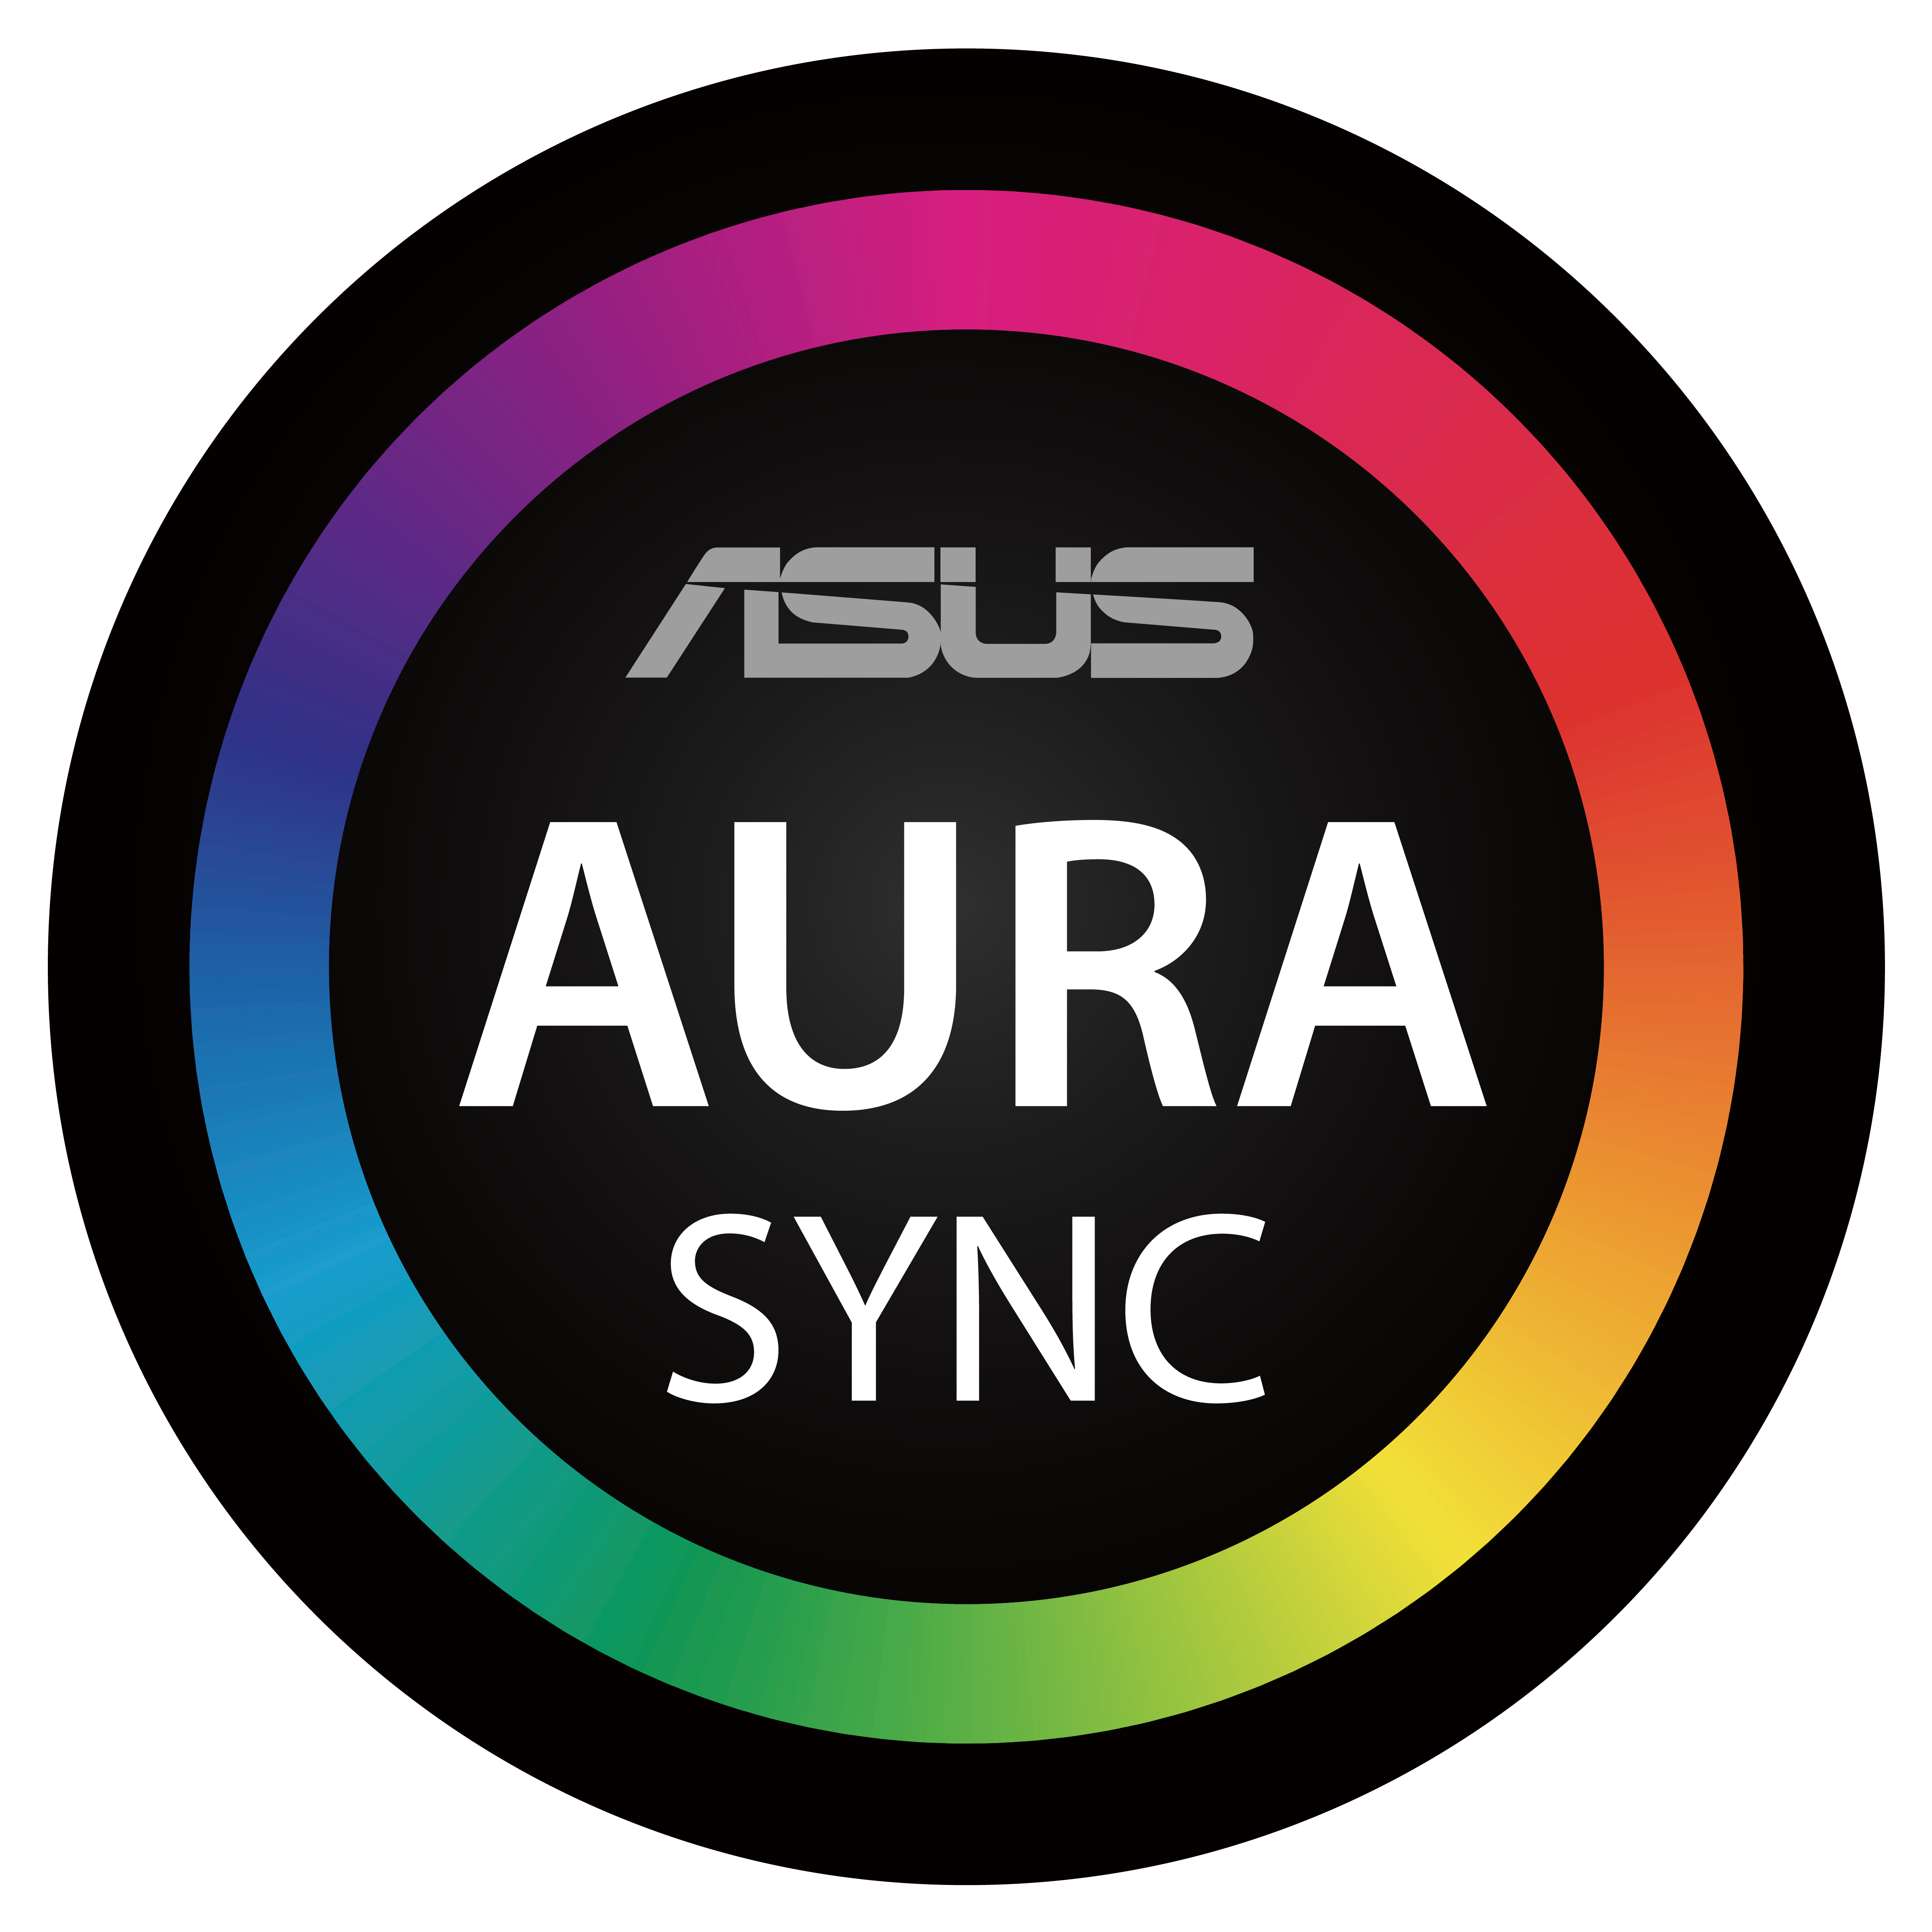 ASUS Aura Sync Symbol